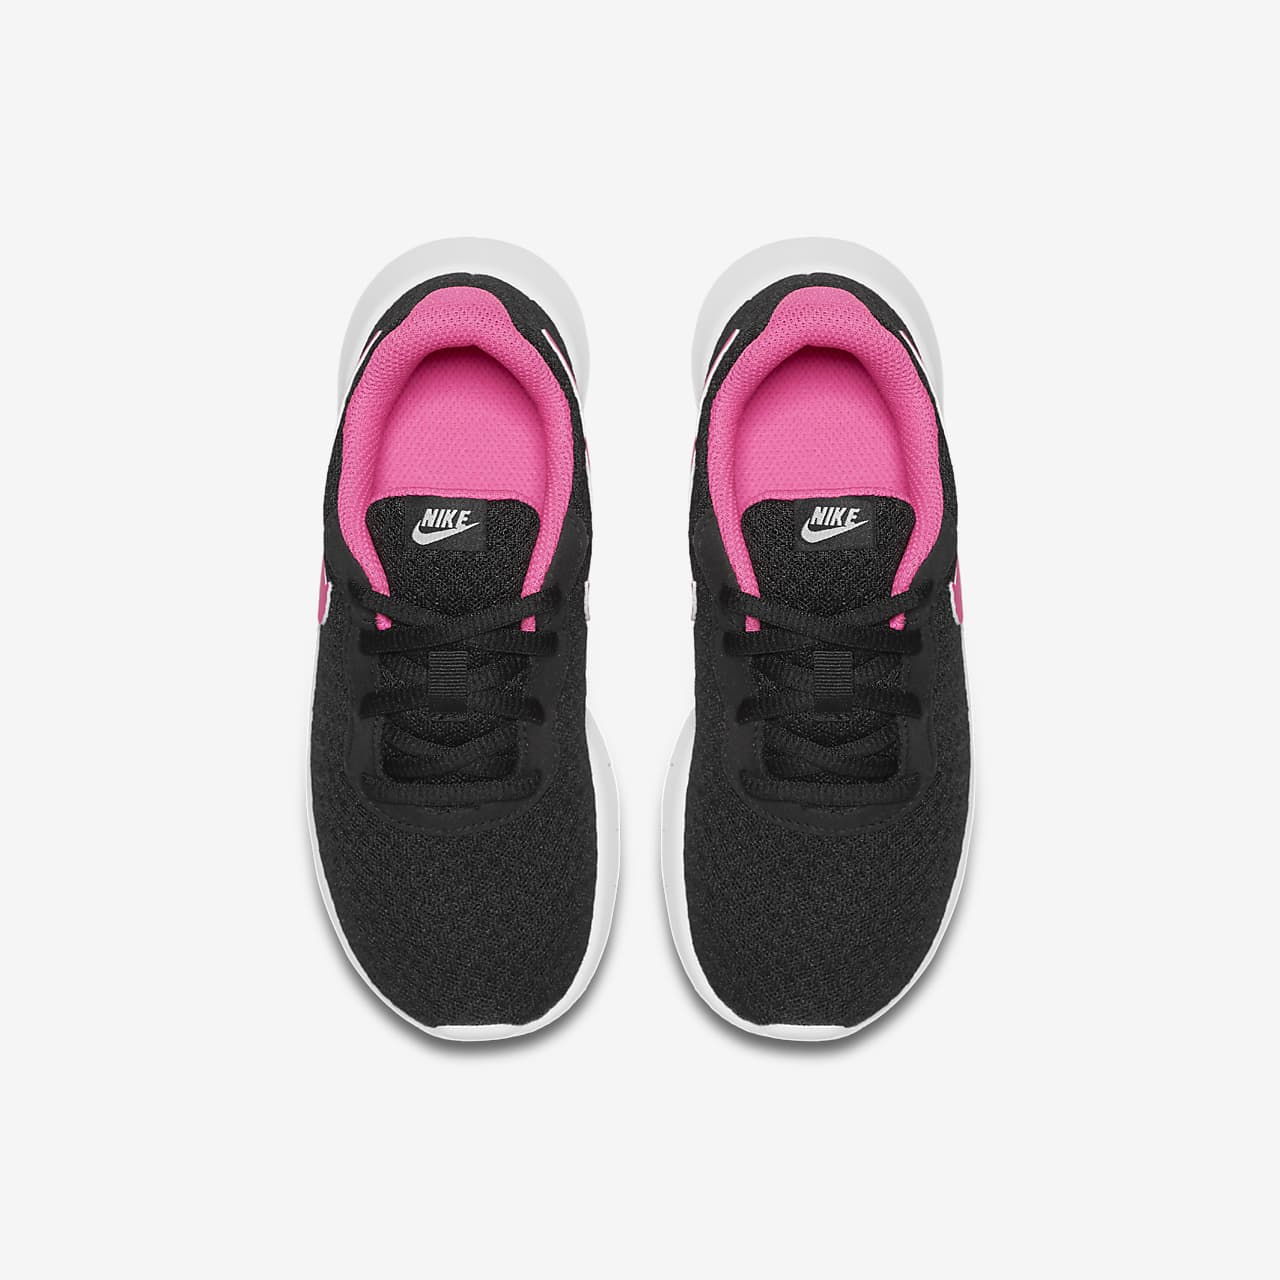 Rechazo No quiero vistazo Nike Tanjun Zapatillas - Niño/a pequeño/a. Nike ES